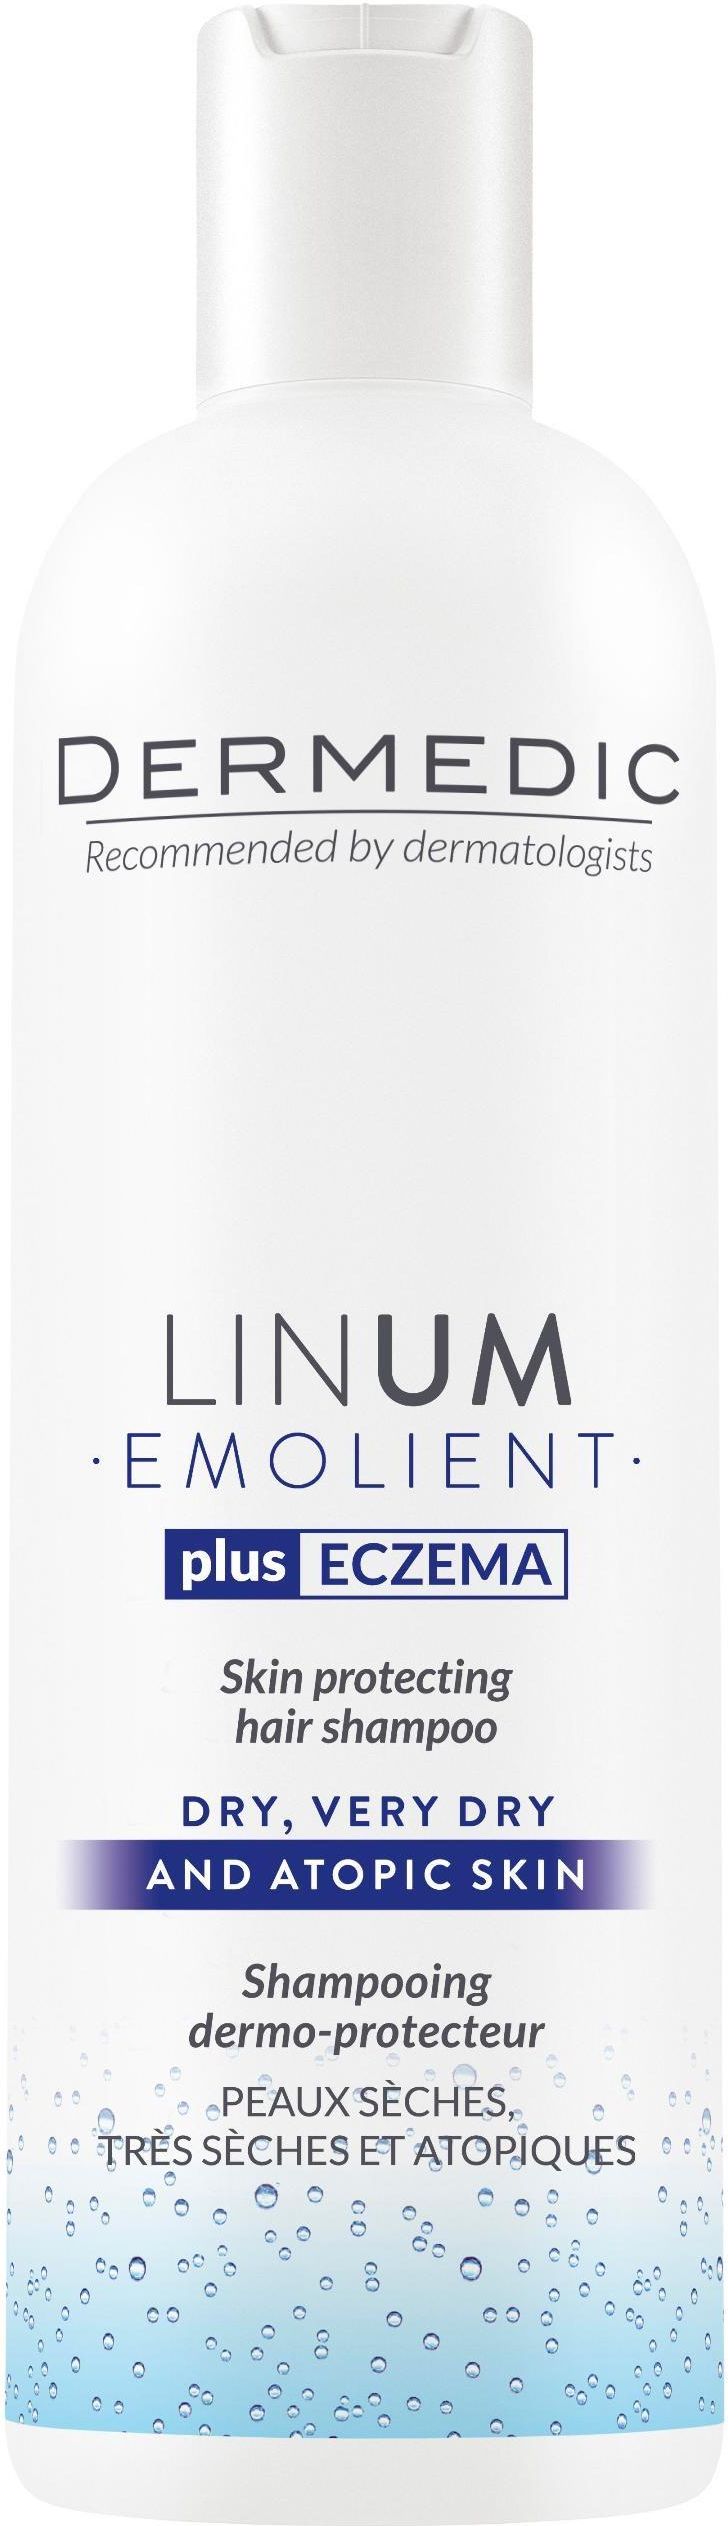 szampon dermedic emolient linum opinie